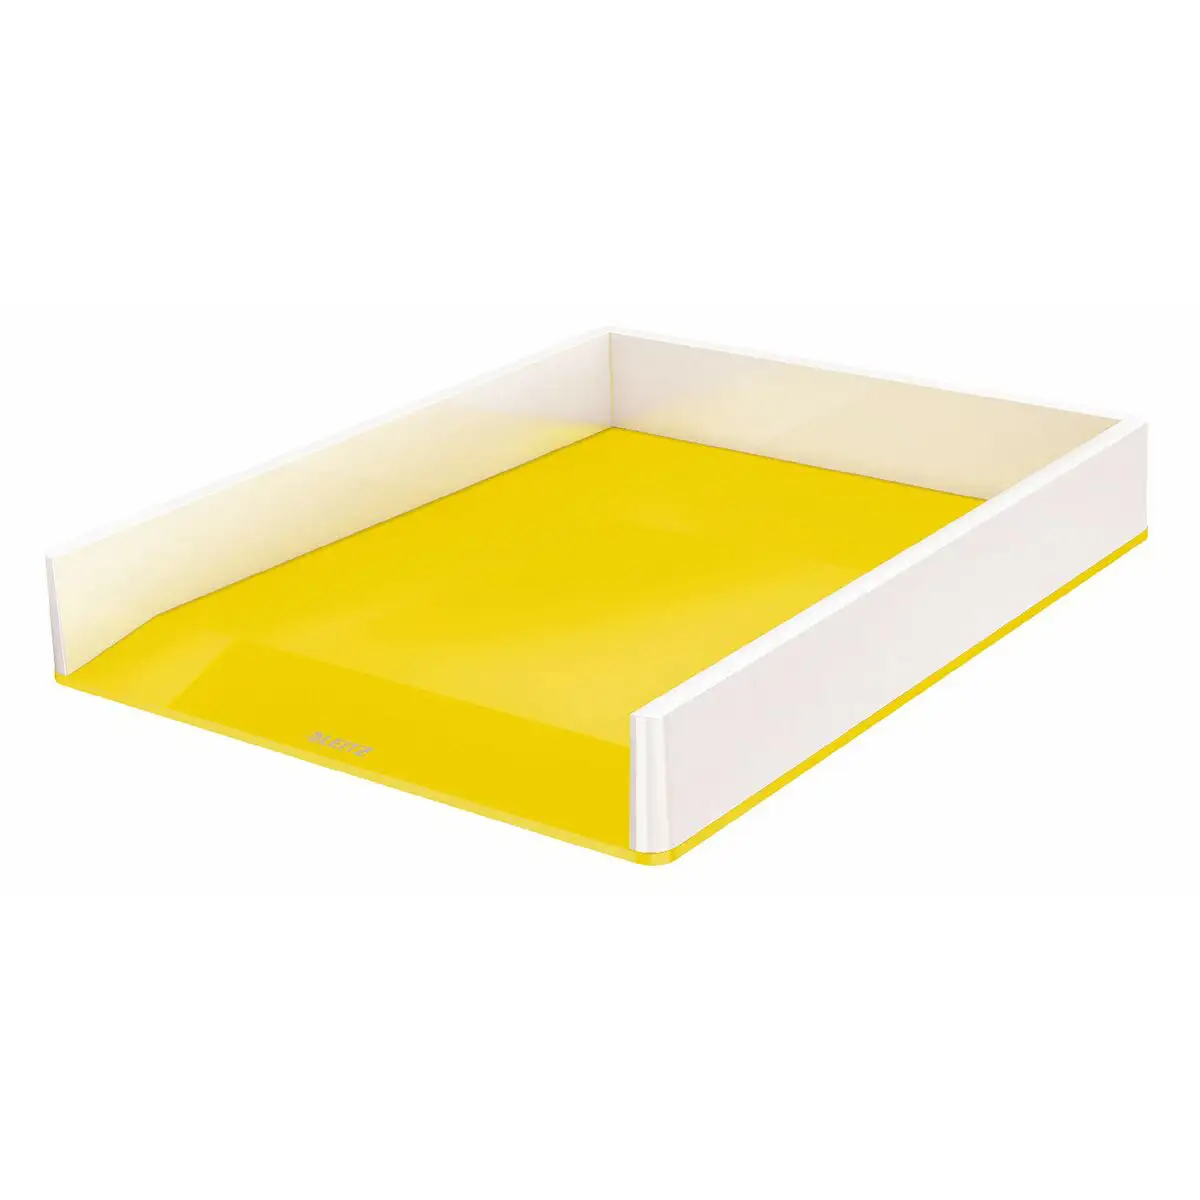 Boite d archivage leitz wow dual blanc jaune polystyrene 26 7 x 4 9 x 33 6 cm _4795. DIAYTAR SENEGAL - Votre Plaisir Shopping à Portée de Clic. Explorez notre boutique en ligne et trouvez des produits qui ajoutent une touche de bonheur à votre vie quotidienne.